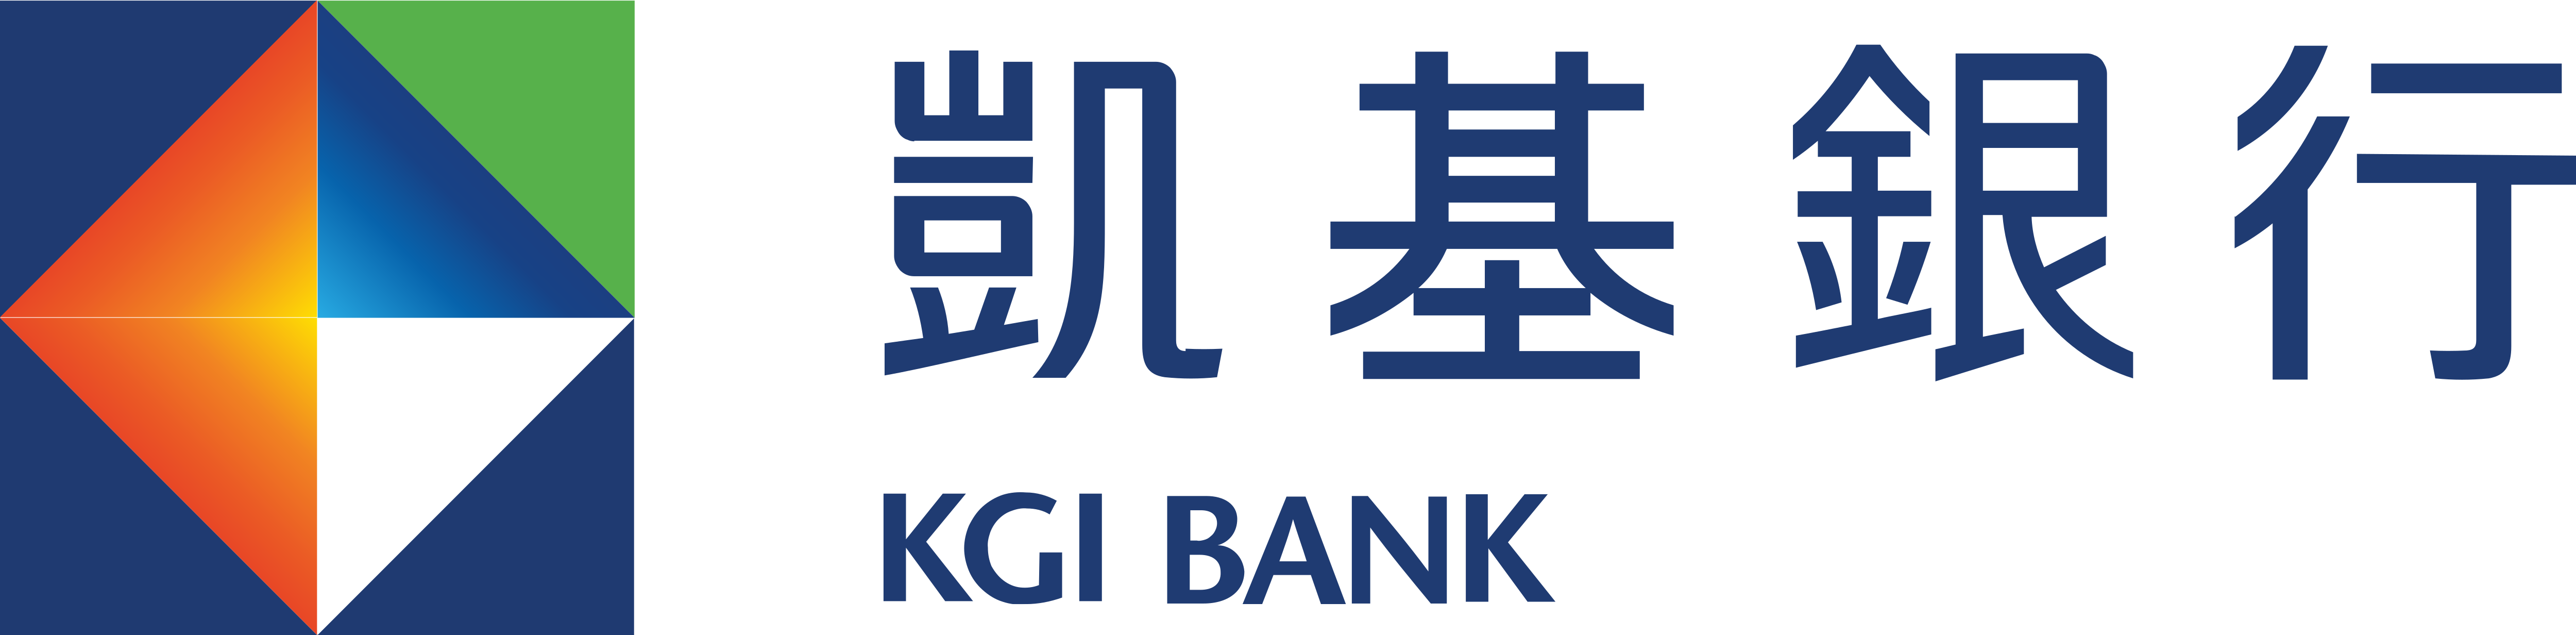 Chouzhou commercial bank co ltd. Union Bank logo. Банк Эсхата лого. Davr Bank logo. KGI.